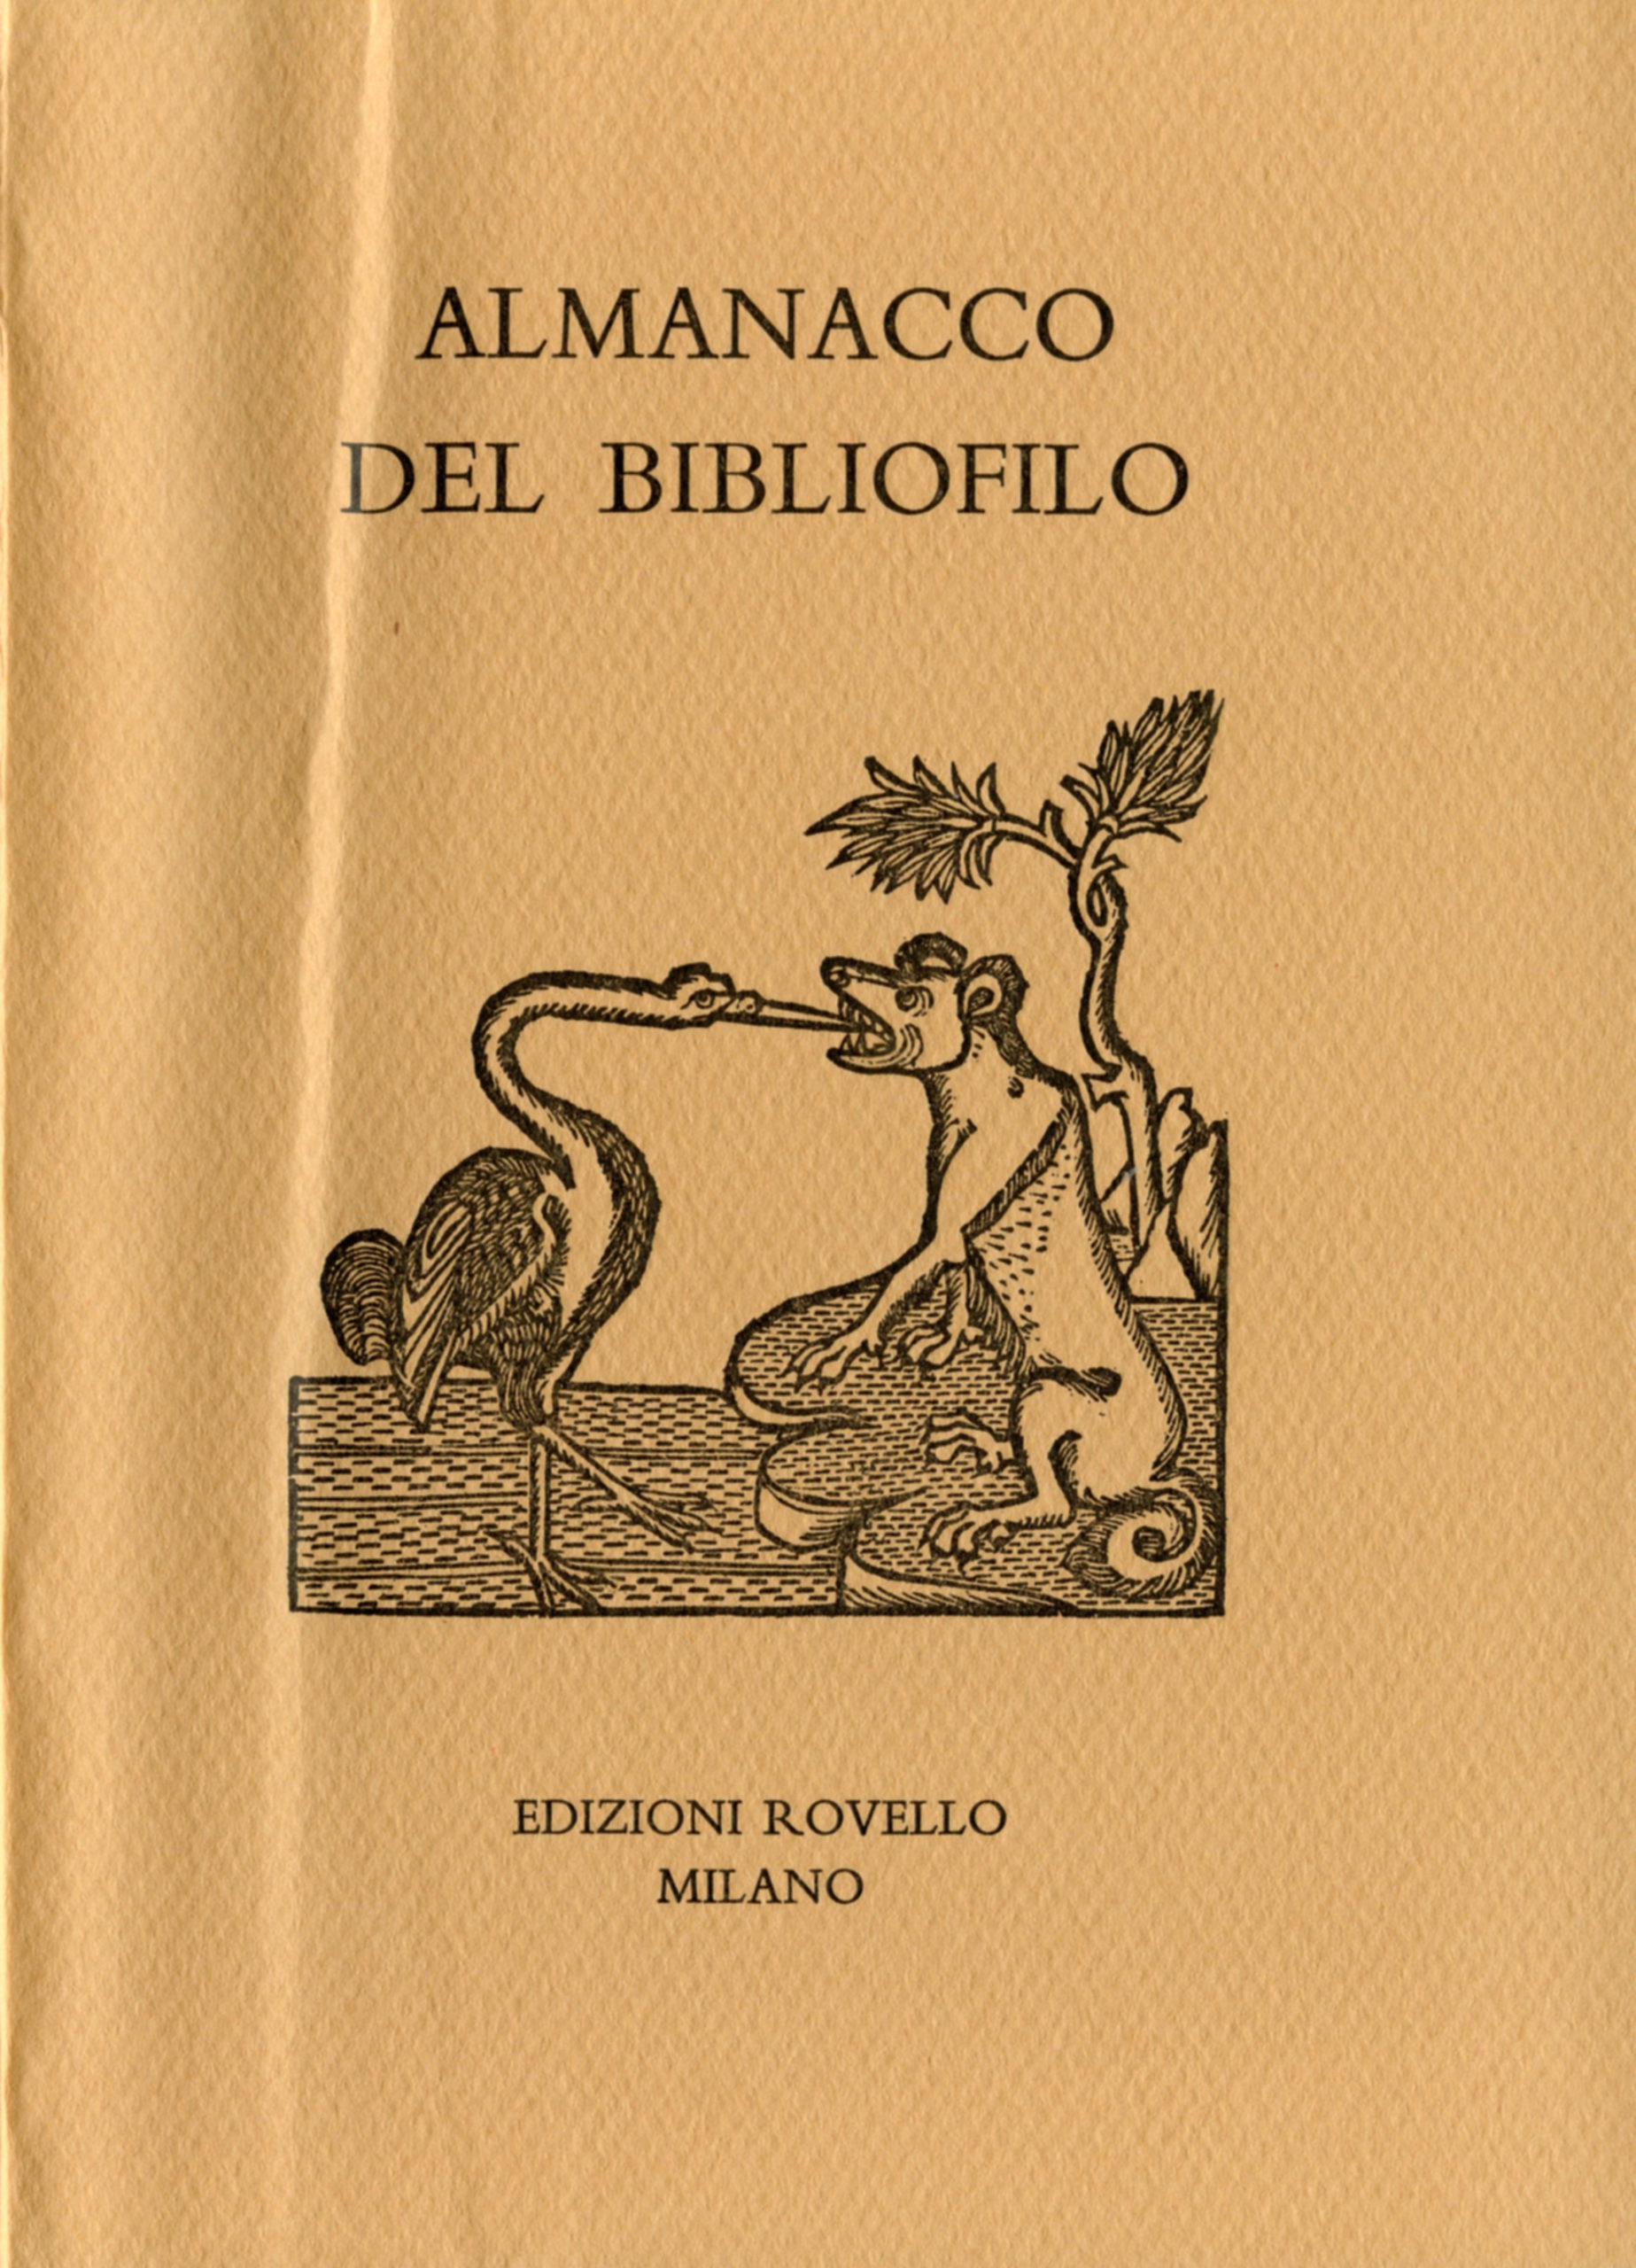 15. Antologia di racconti e saggi di bibliofilia (2004)